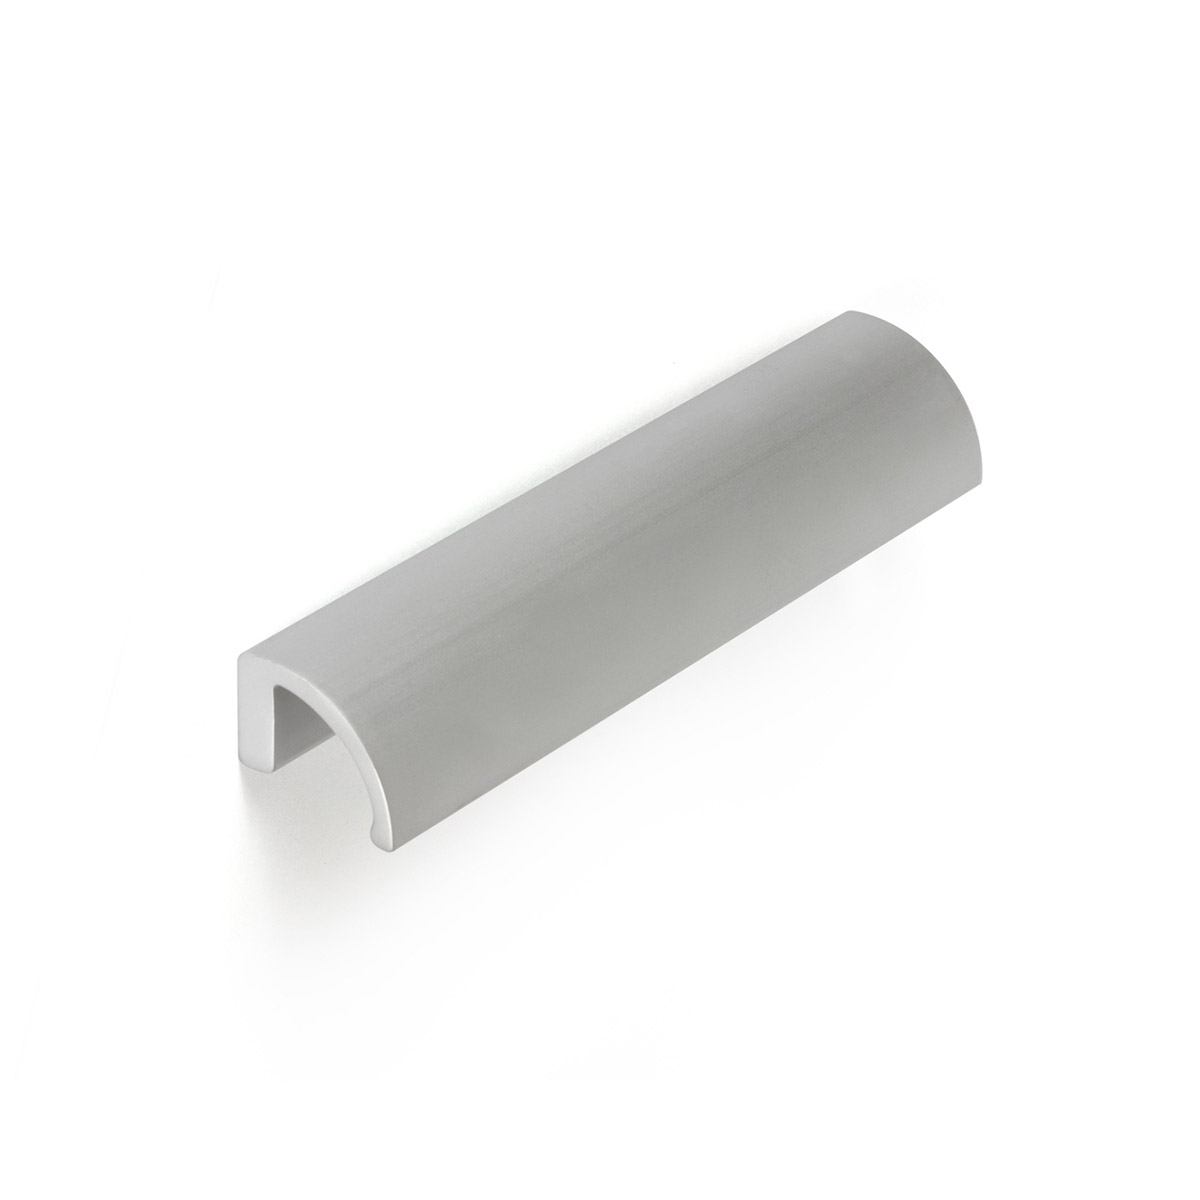 Asa de aluminio con acabado anodizado mate, dimensiones:174x27x30mm y entrepuntos:160mm